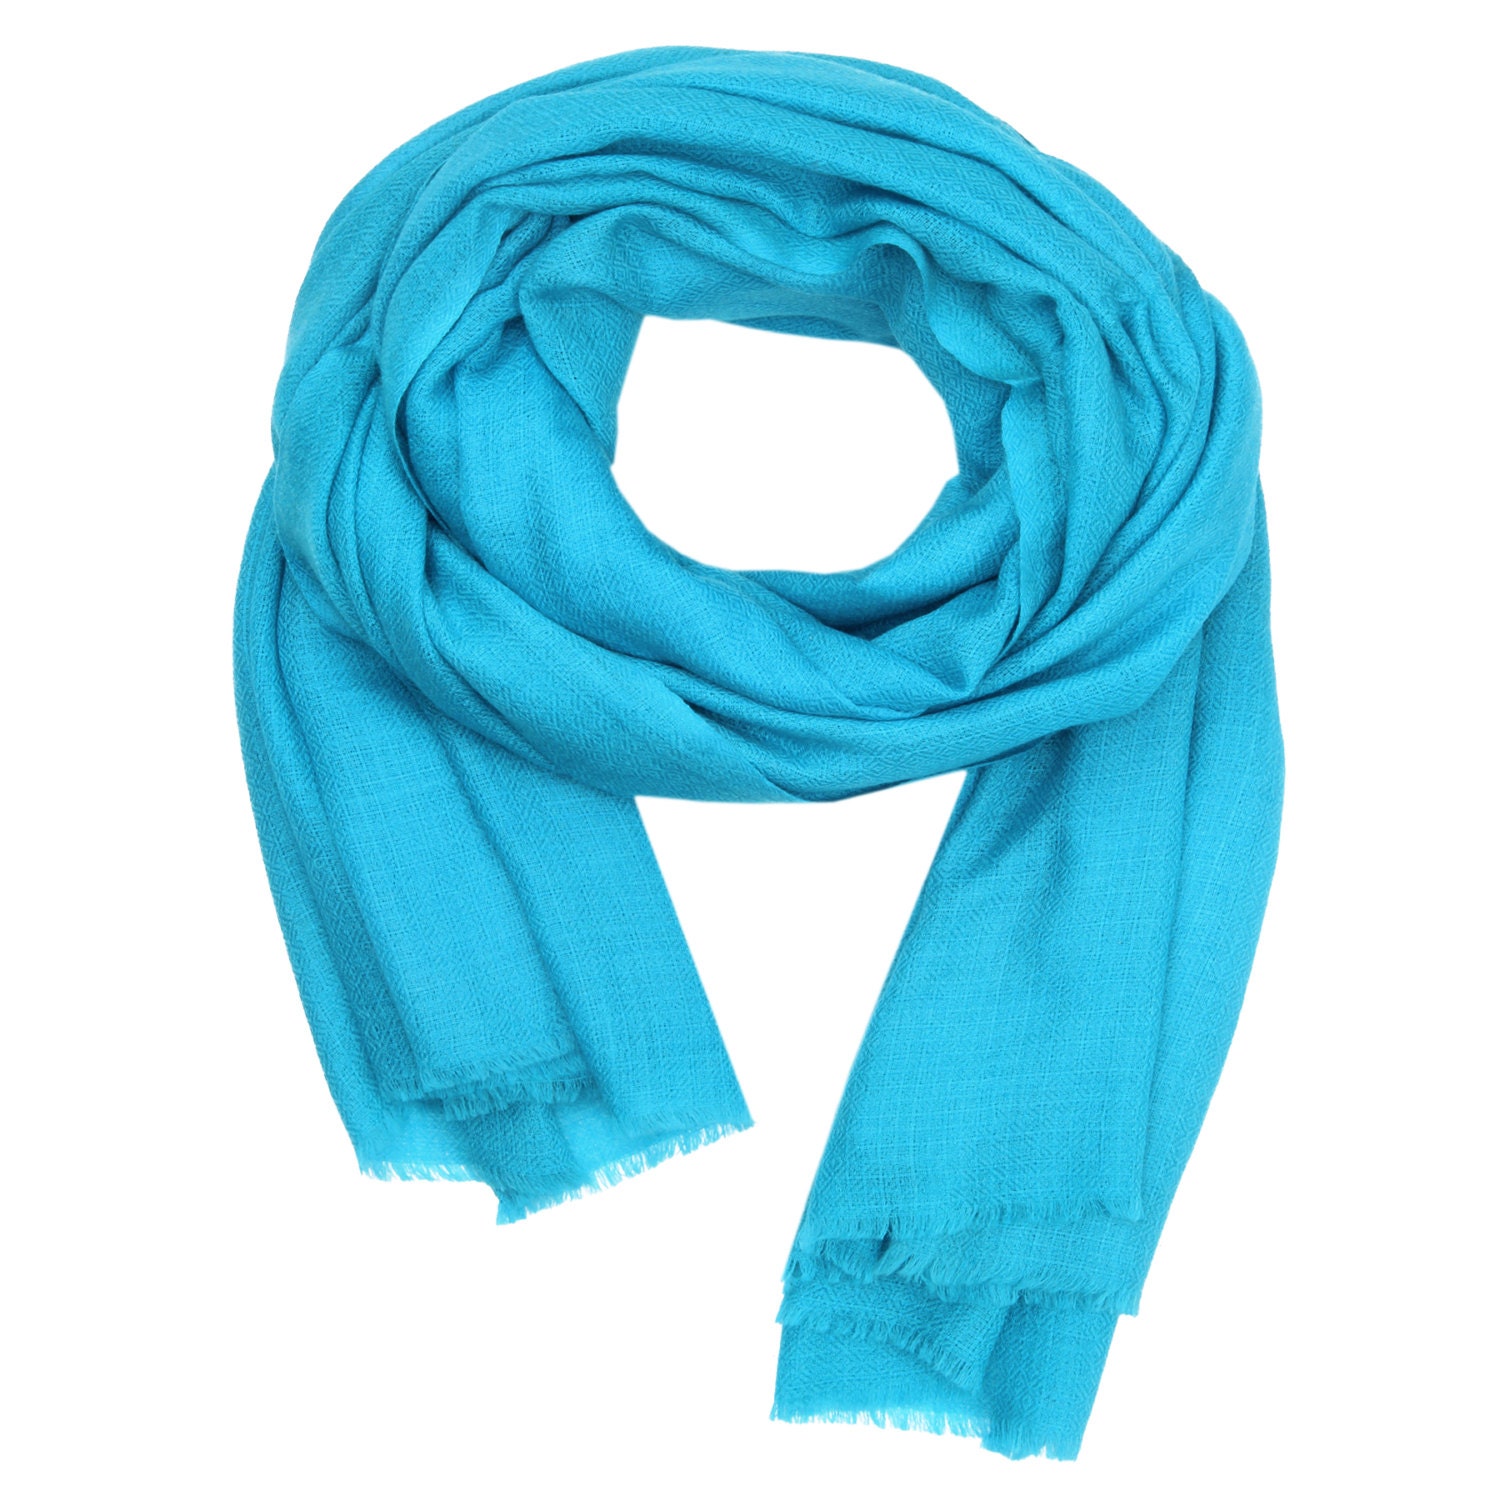 Merino Wool & Silk Shawl Blue Scarf Long Soft Winter Fashion